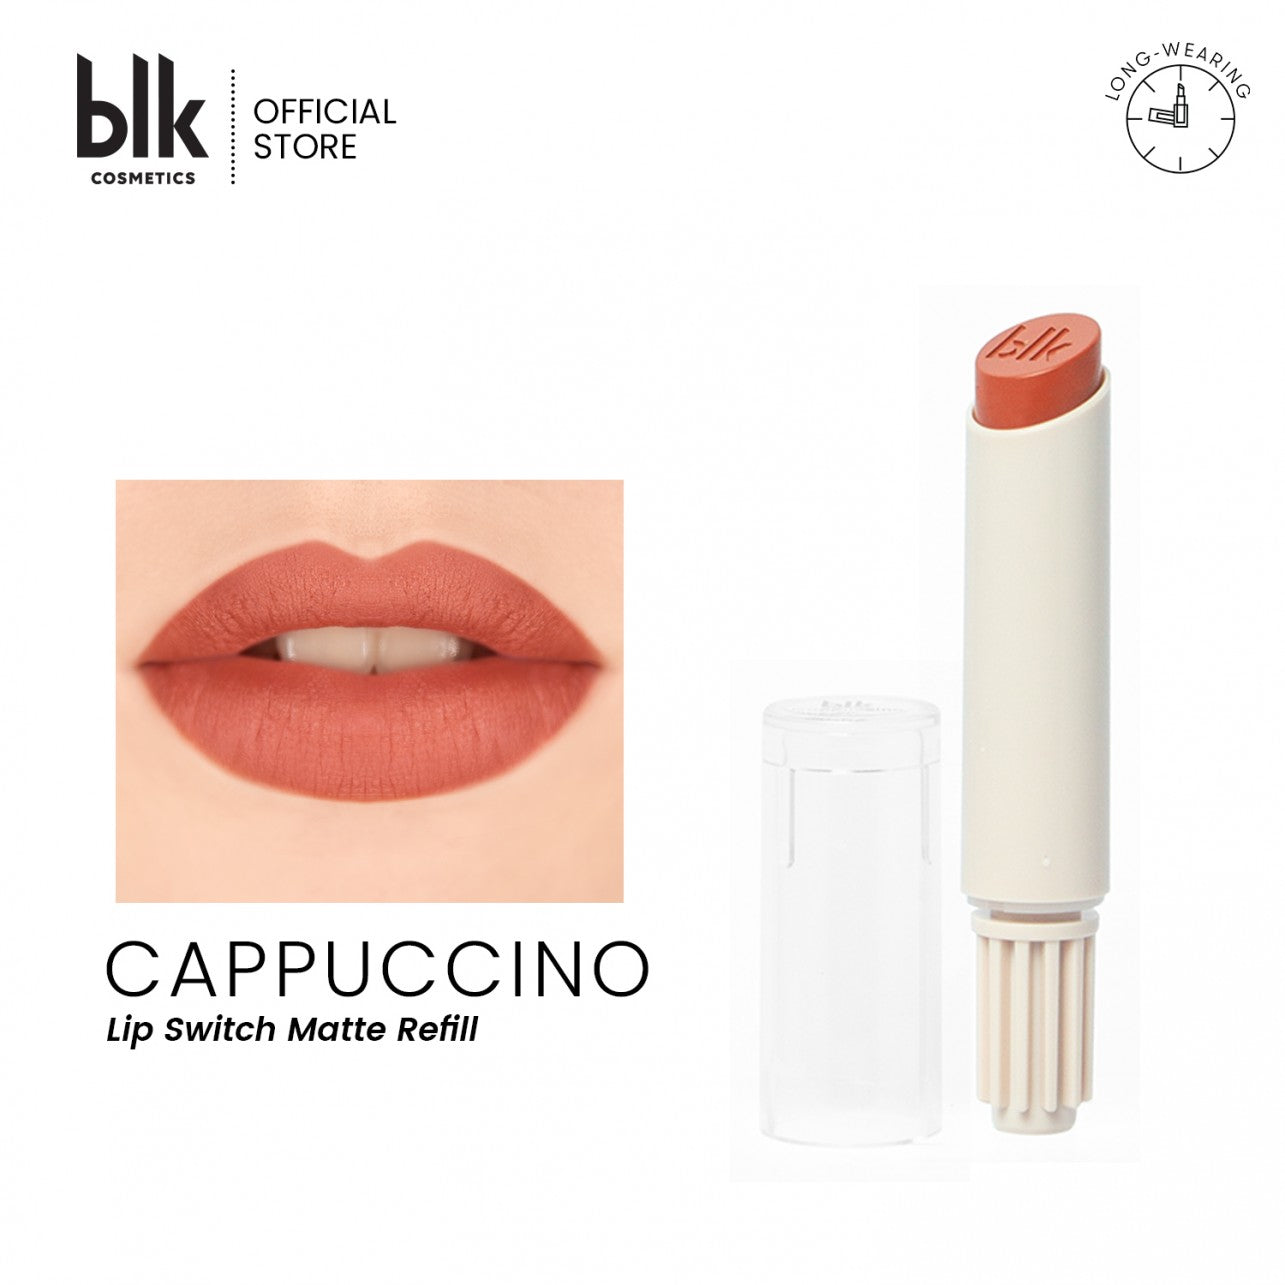 blk Cosmetics Universal Lip Switch Matte Refill (Cappuccino)